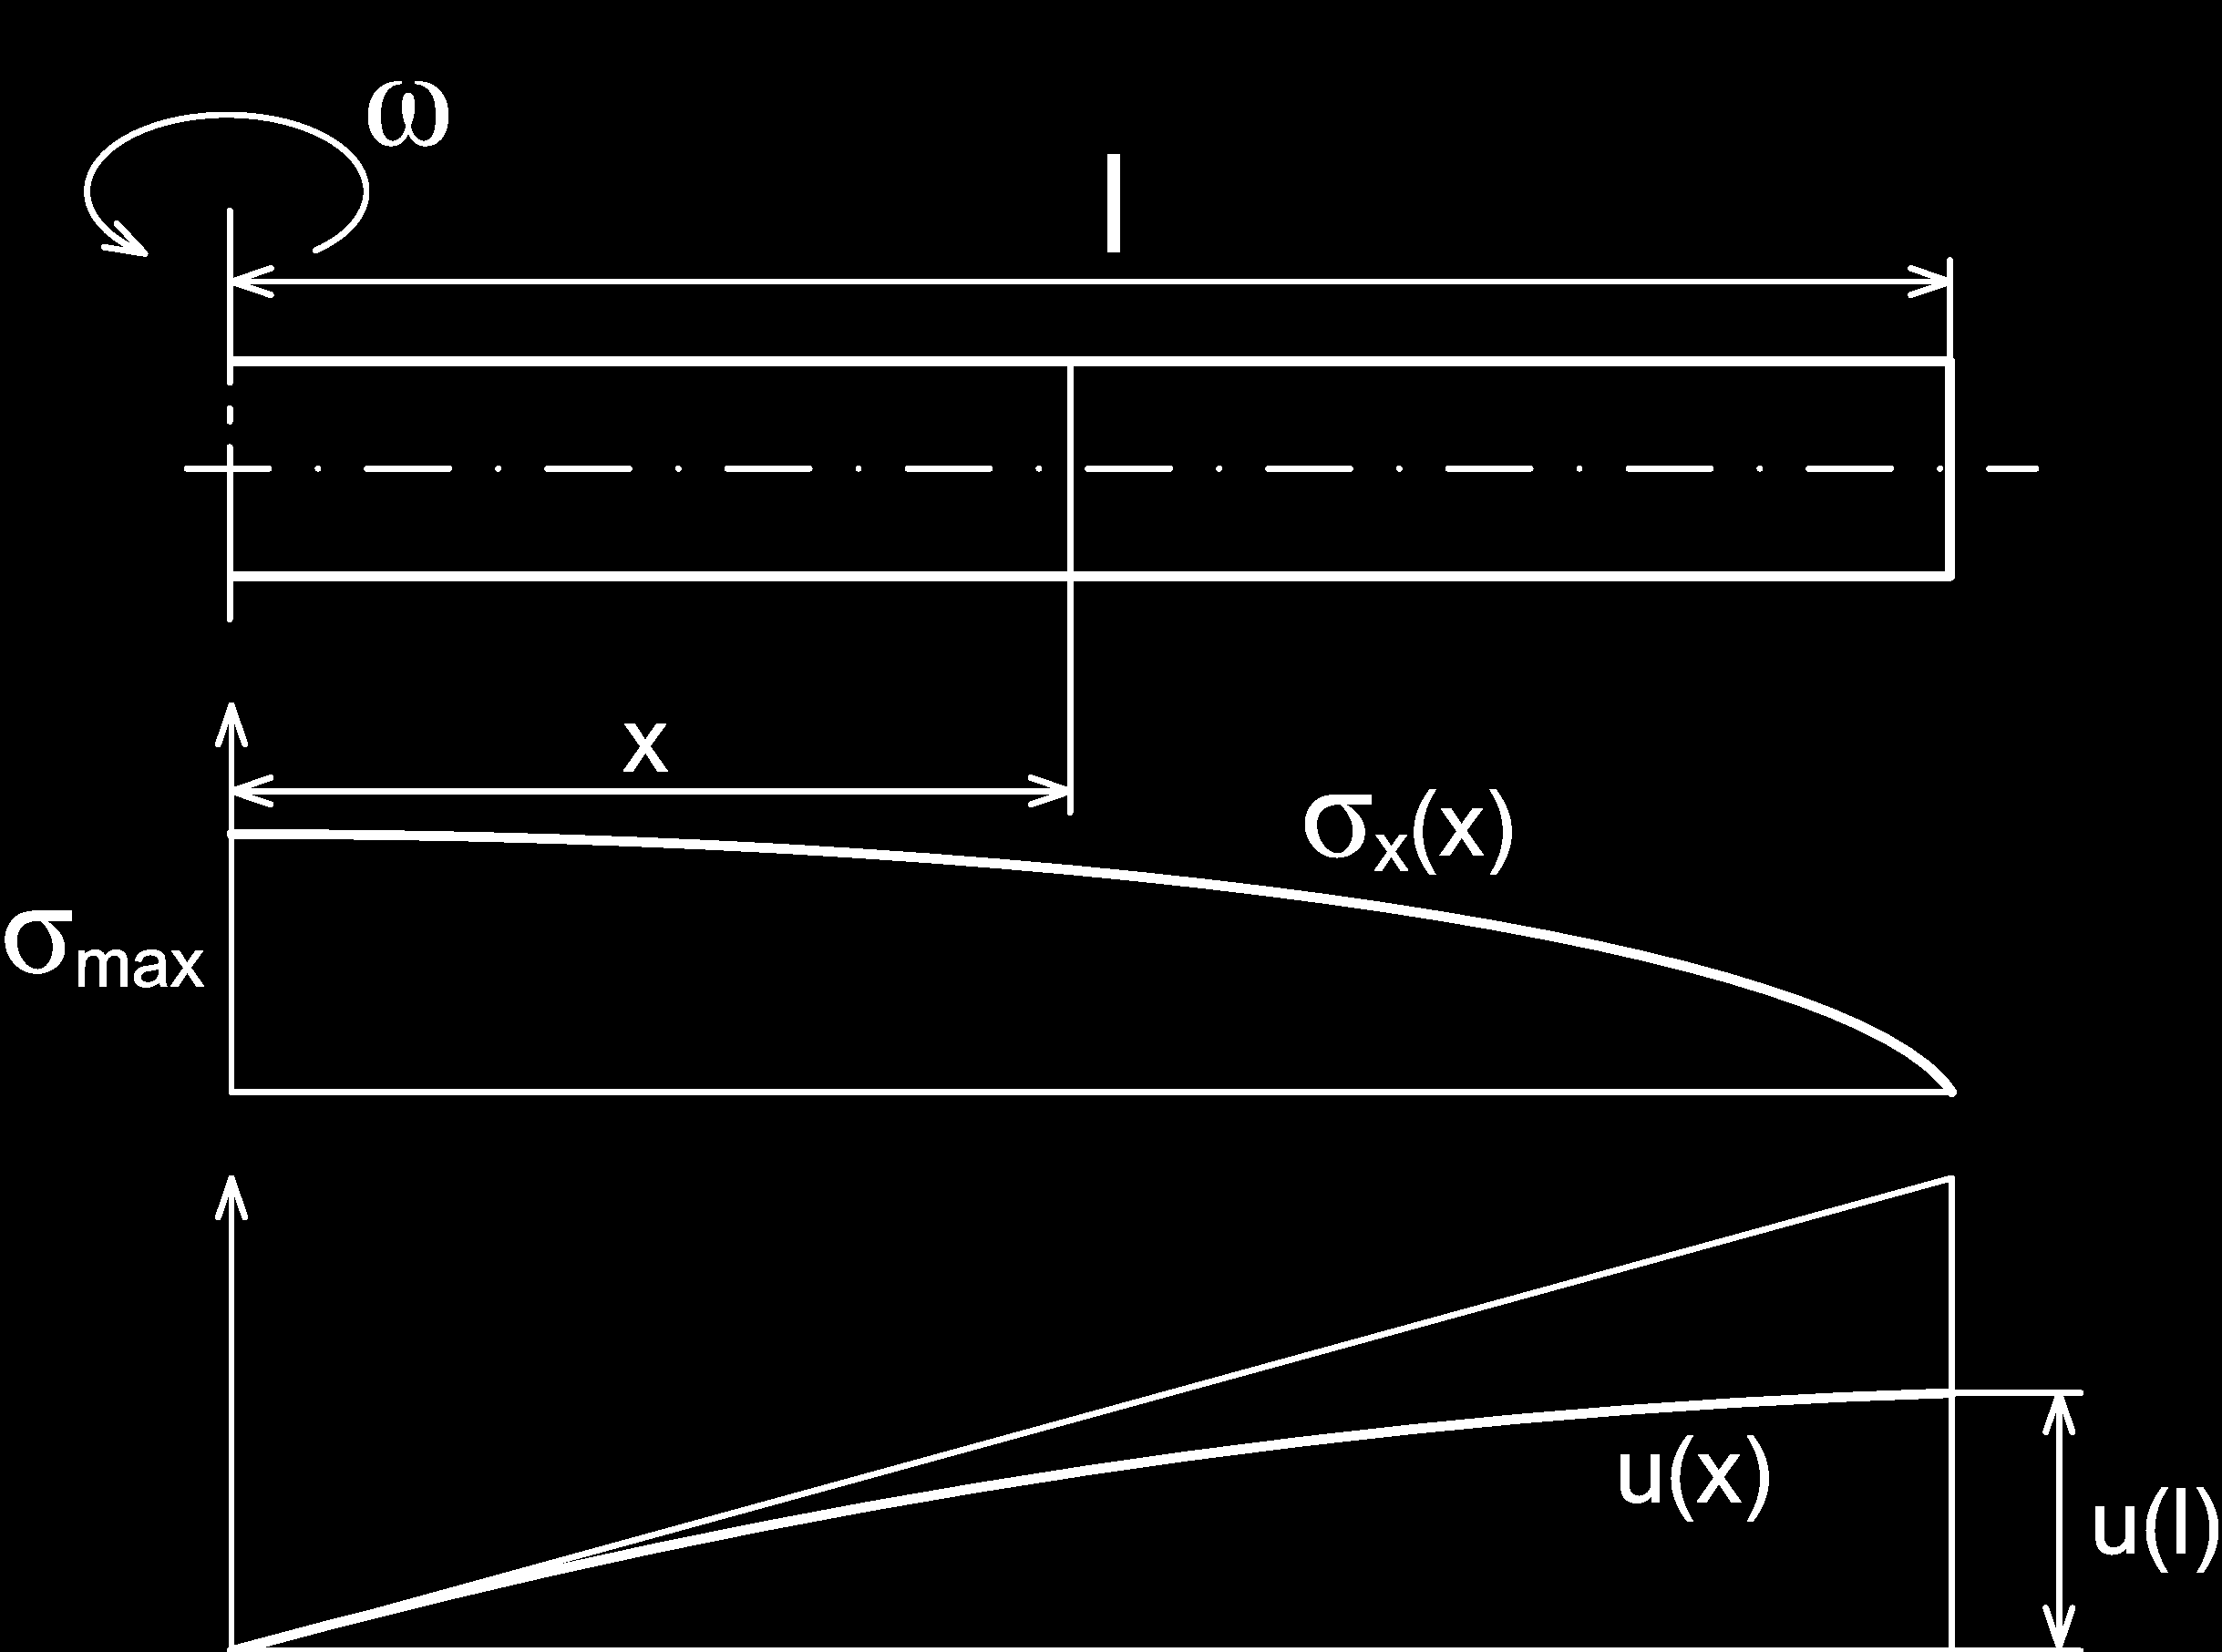 A pro posuv u v místě x R prutu platí u(x R ) = x R 0 du = x R 0 ε x dx = = ρω2 2E x R 0 σ x E dx = 1 2E ρω2 ( ) l 2 x R x3 R 3 x R 0 ( ) l 2 x 2 R dx (6.